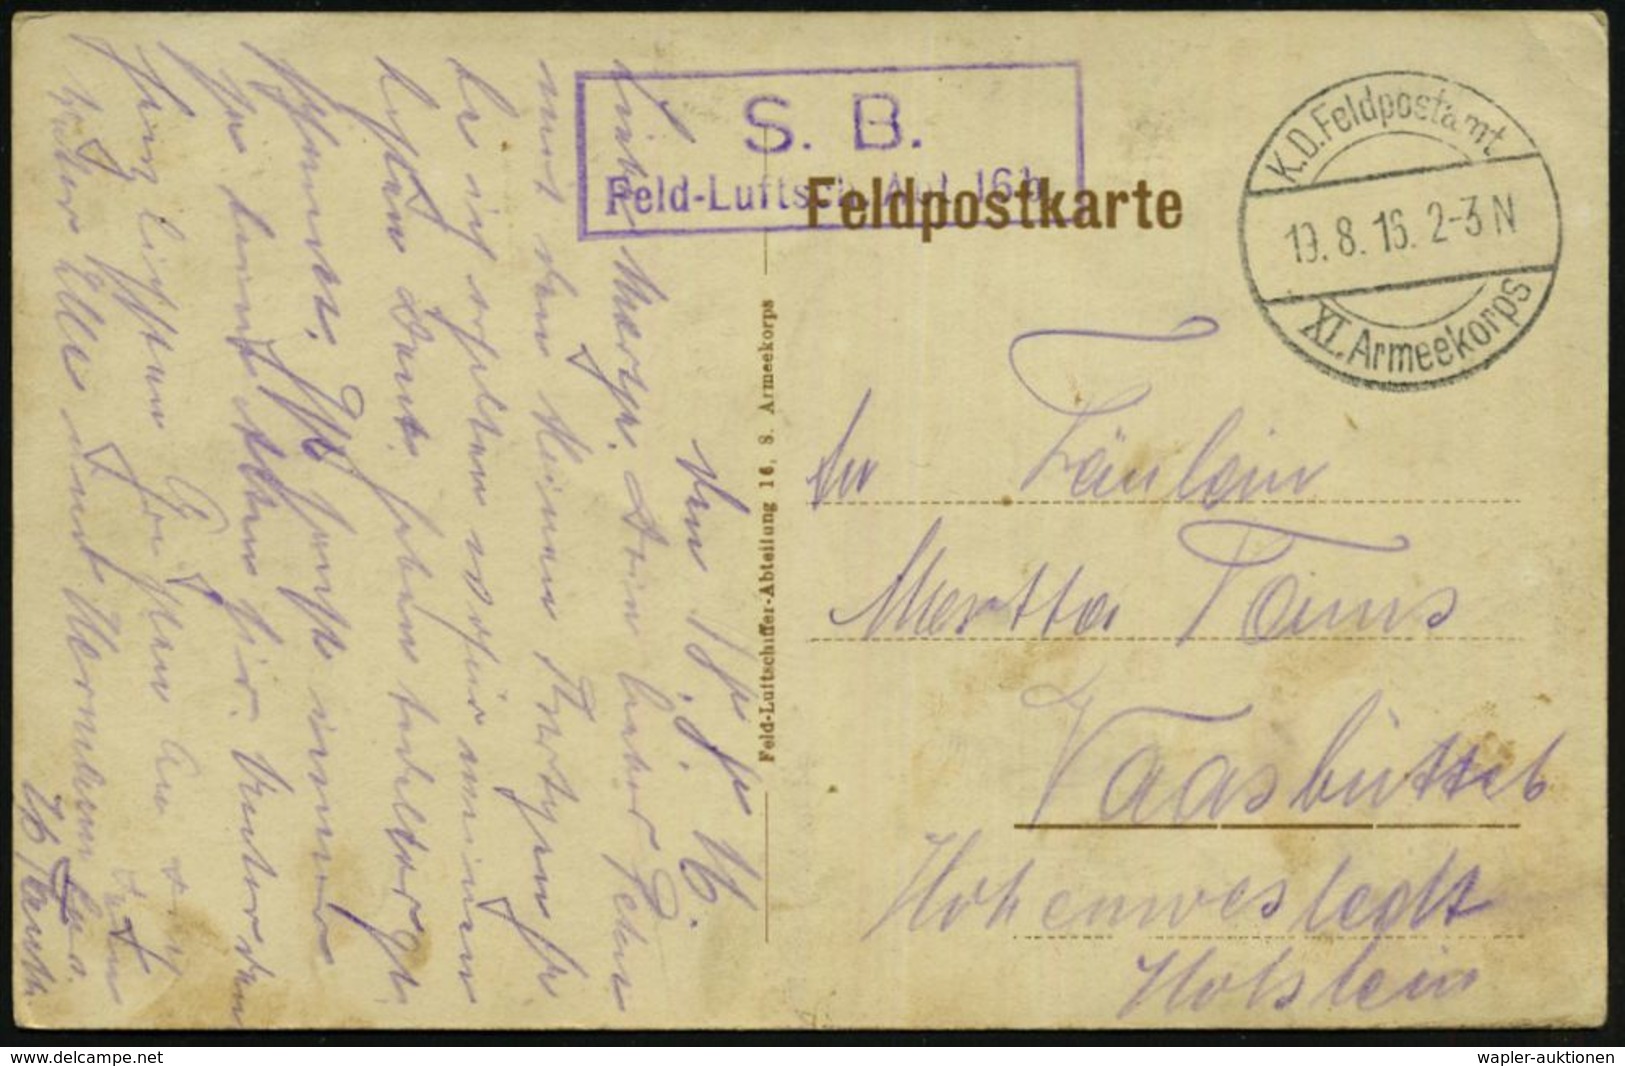 LUFTFELDPOST 1914-18 LUFTSCHIFFE & LUFTSCHIFFER-EINHEITEN : DEUTSCHES REICH 1916 (19.8.) 1K-Brücke: K. D. Feldpostamt/XI - Zeppelin